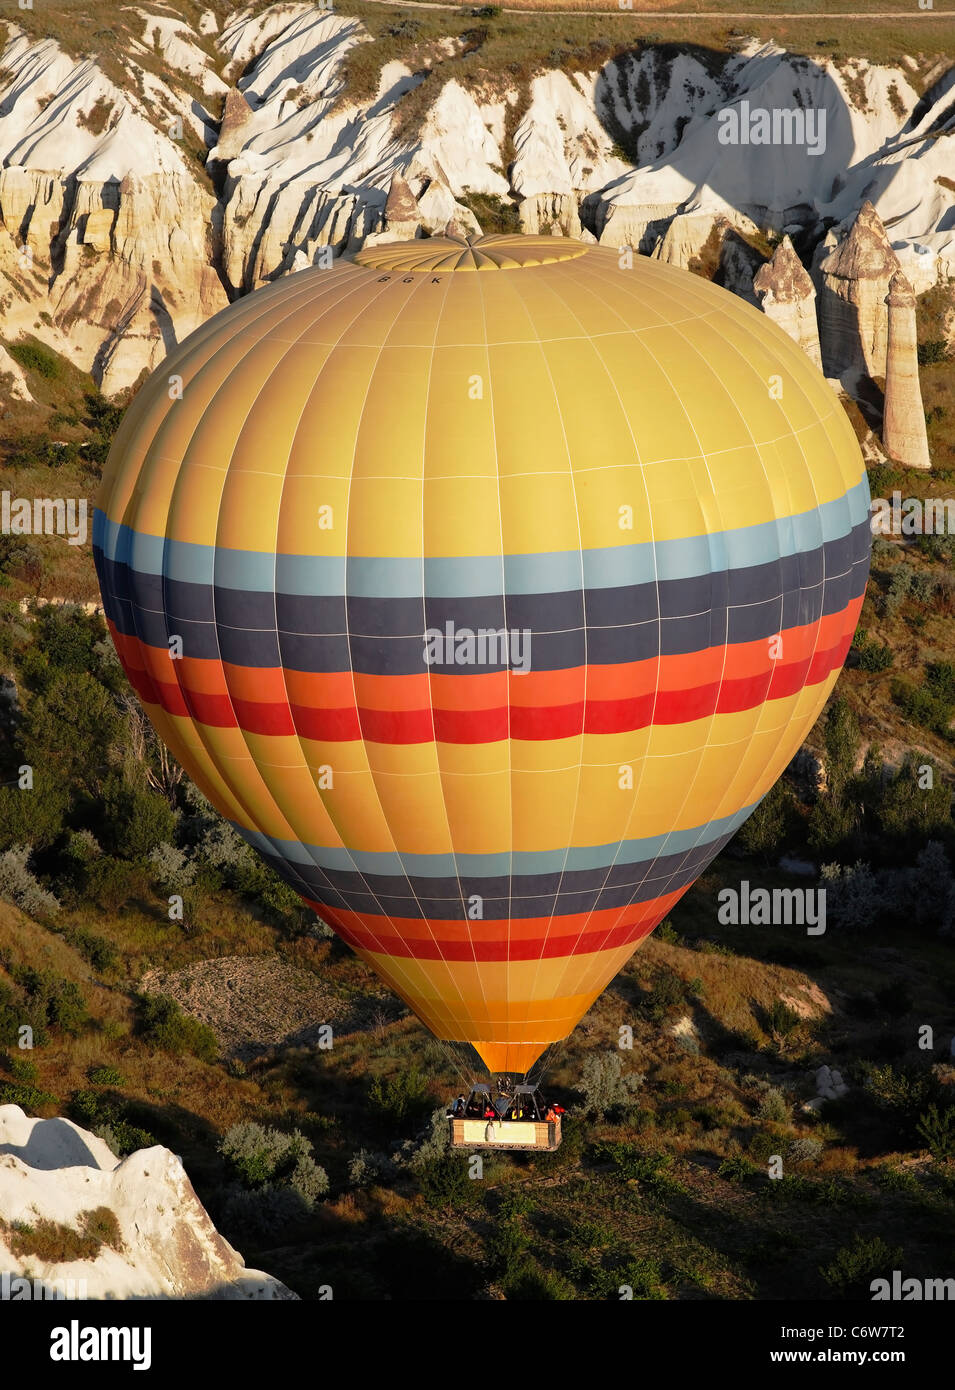 Heißluftballon gesehen von oben, Wüste Gelände, Kalkstein-Gelände, gelb mit farbigen Bändern, Korb mit Menschen, Porträt, Stockfoto